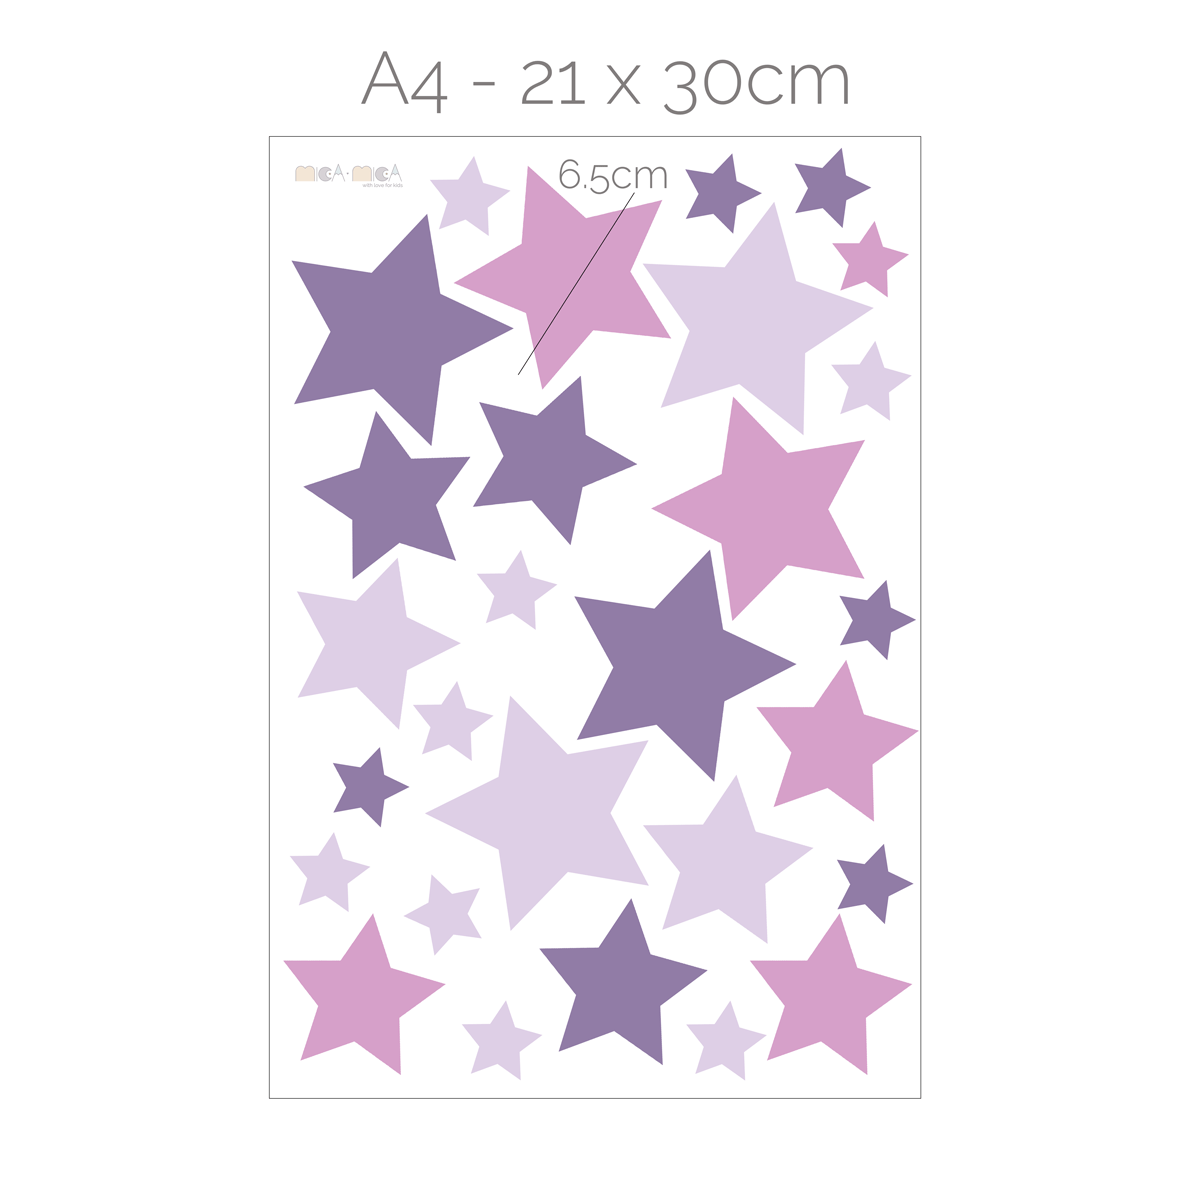 Stars wall stickers - Purple/pink